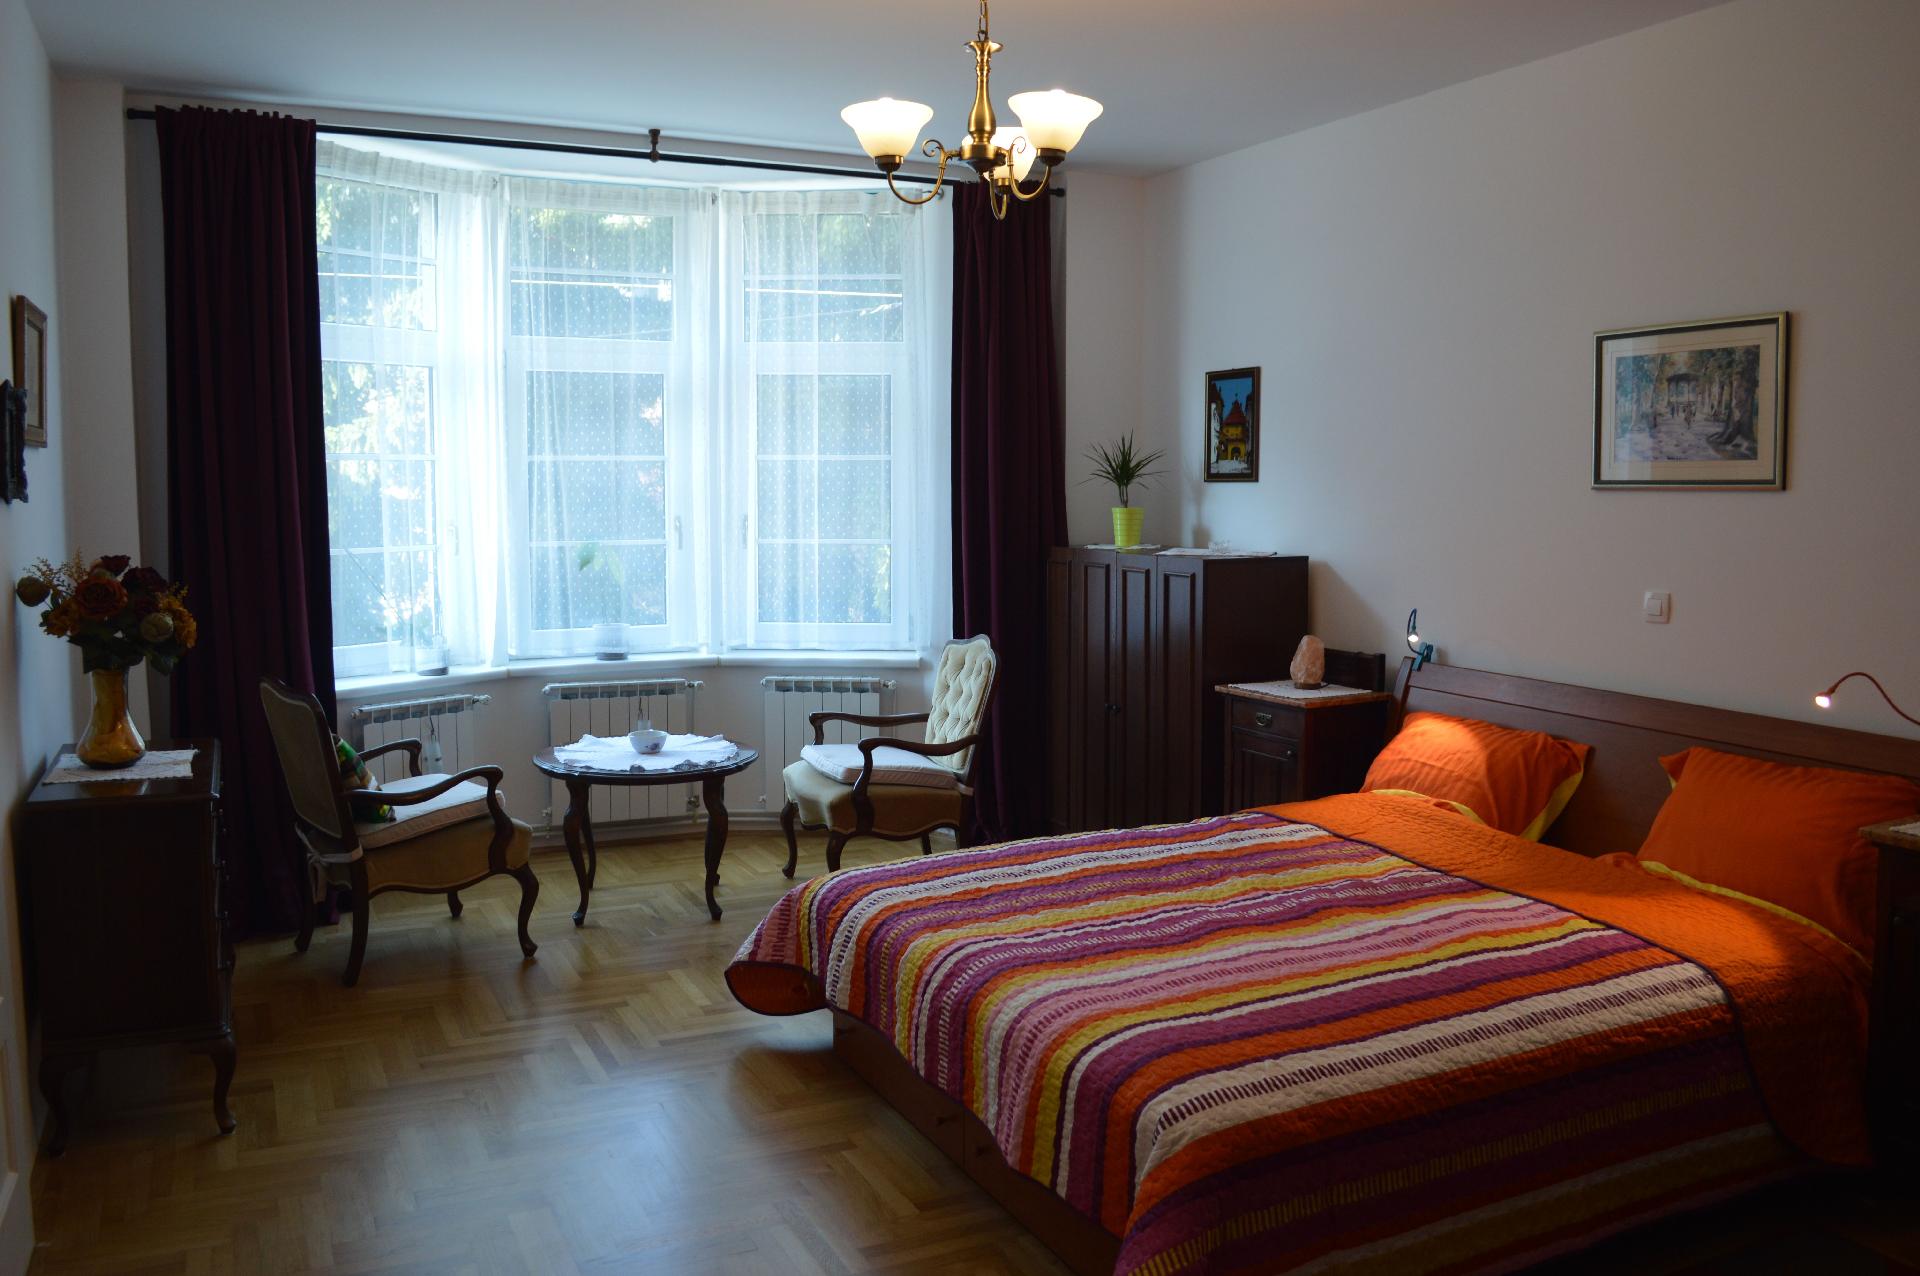 Ferienwohnung für 4 Personen ca. 80 m² i Ferienhaus in Kroatien